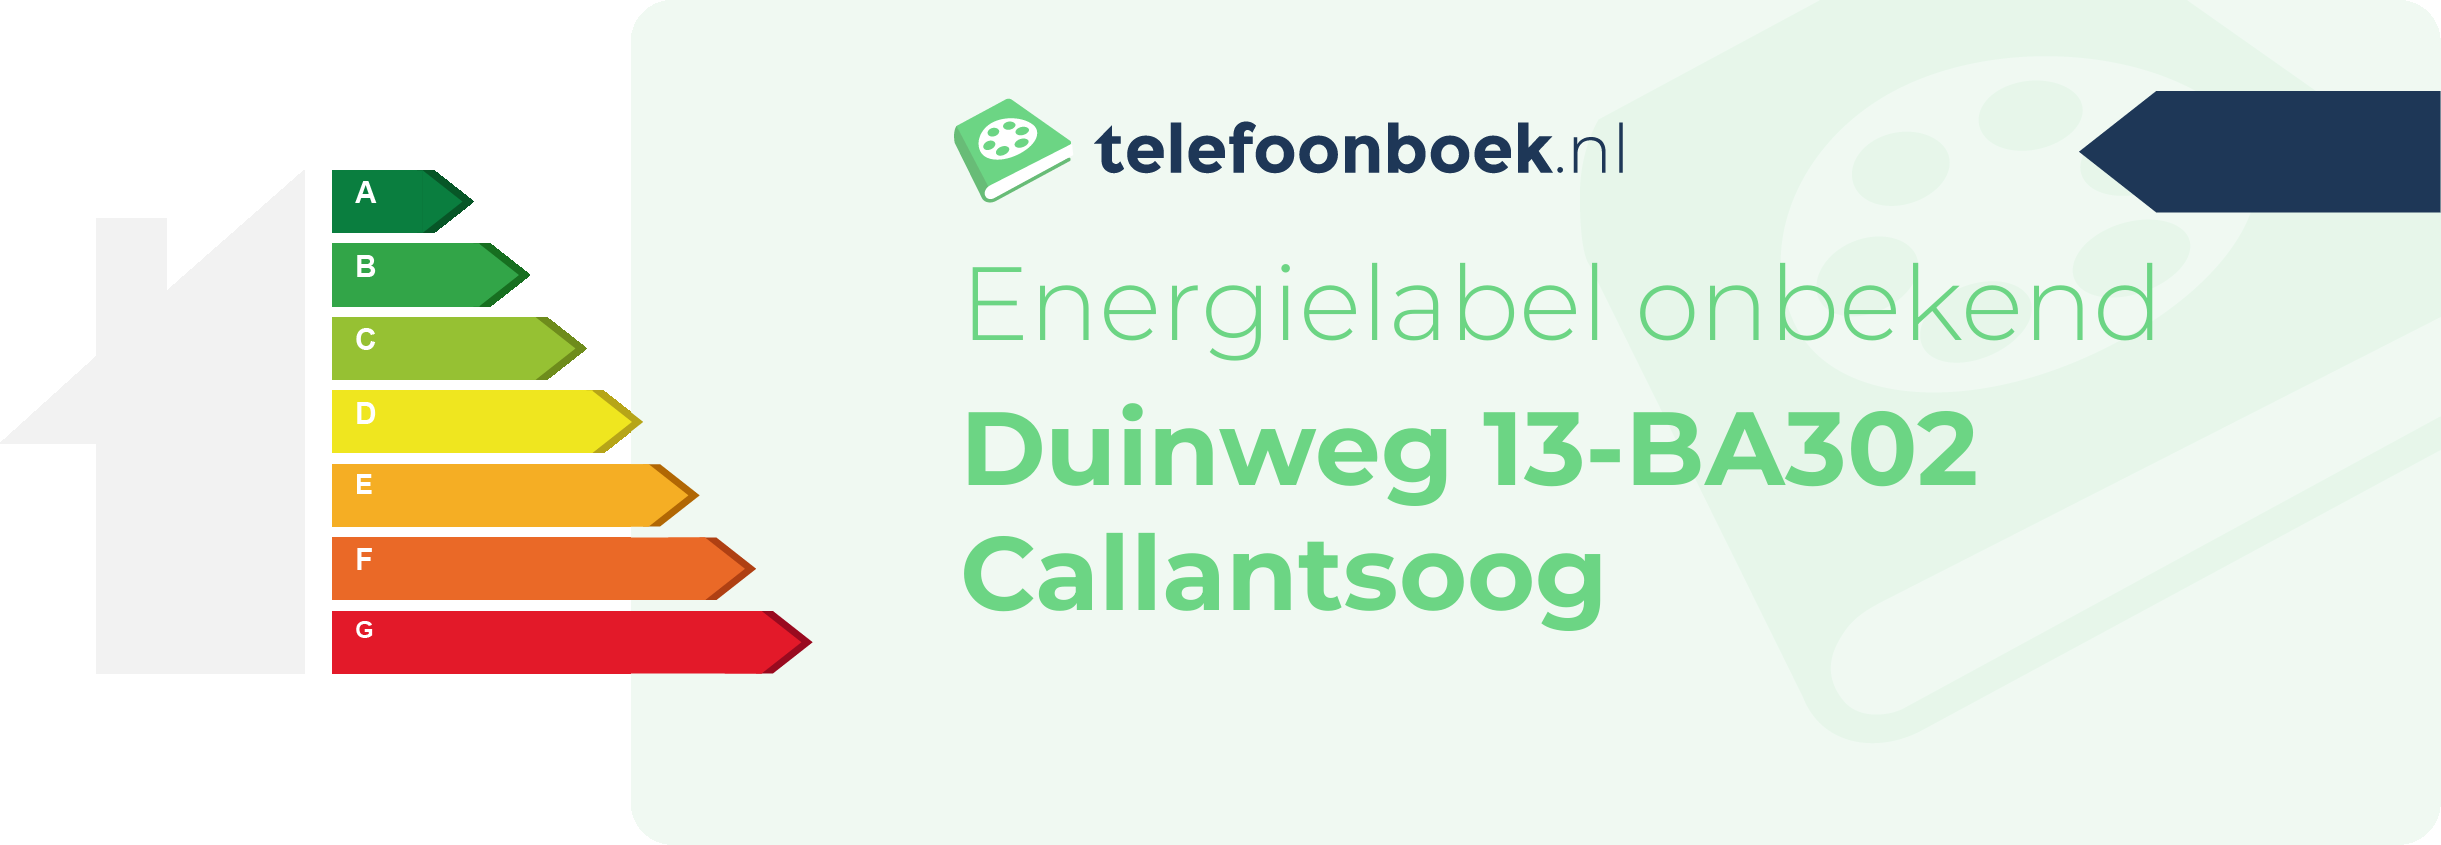 Energielabel Duinweg 13-BA302 Callantsoog